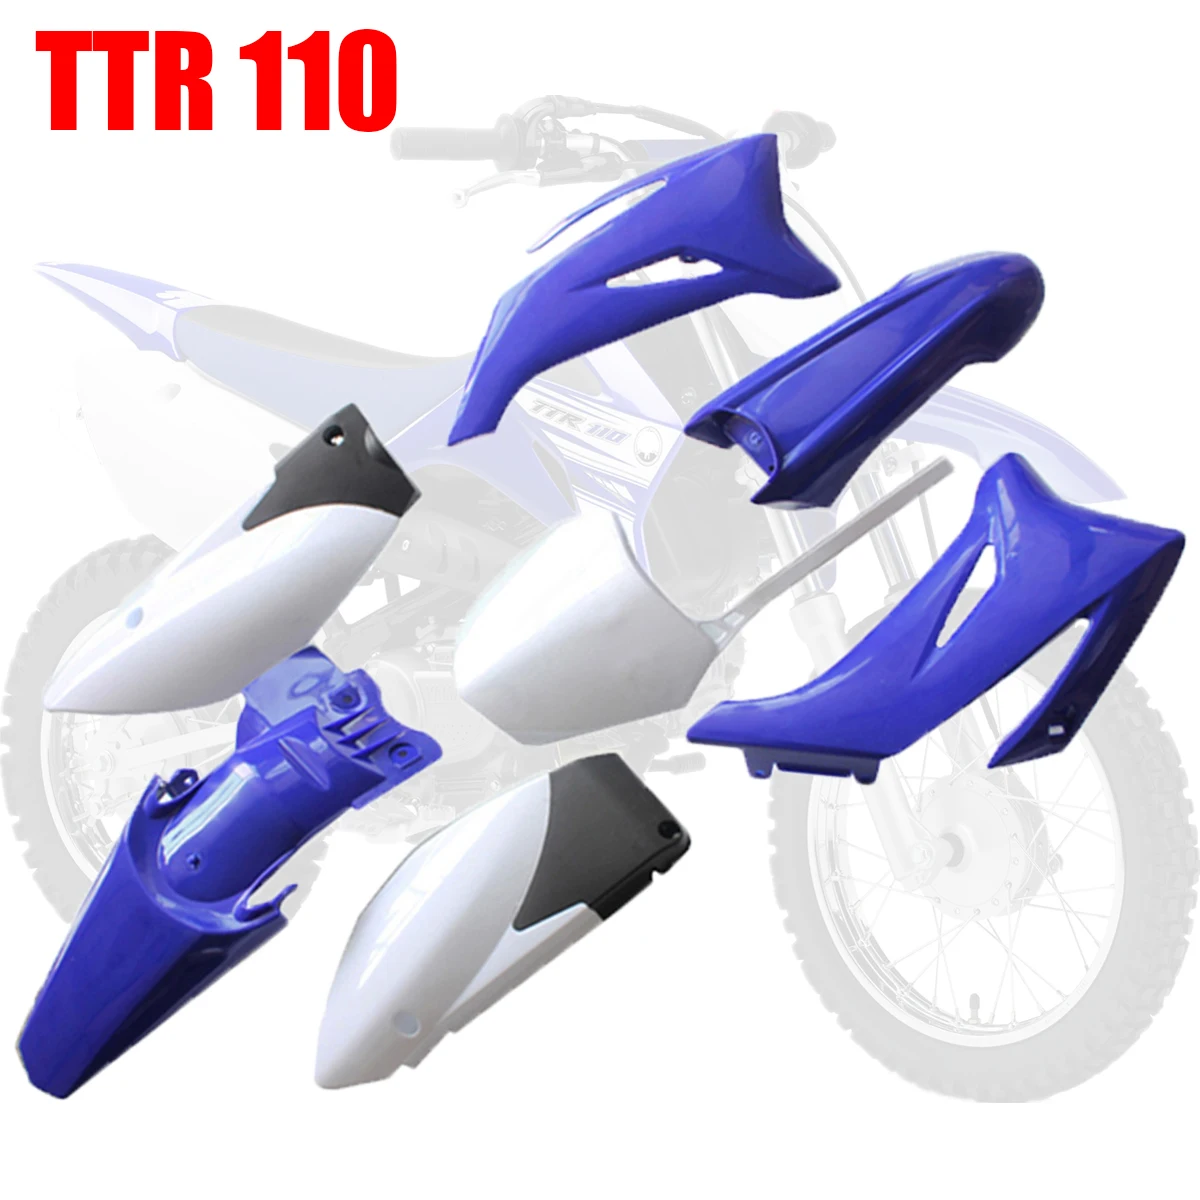 Комплект пластиковых обтекателей TTR110 для мотоцикла-внедорожника Yamaha TTR110 TTR 110 2008 2009 2010 2011 2012 2013 2014 и 110-200CC